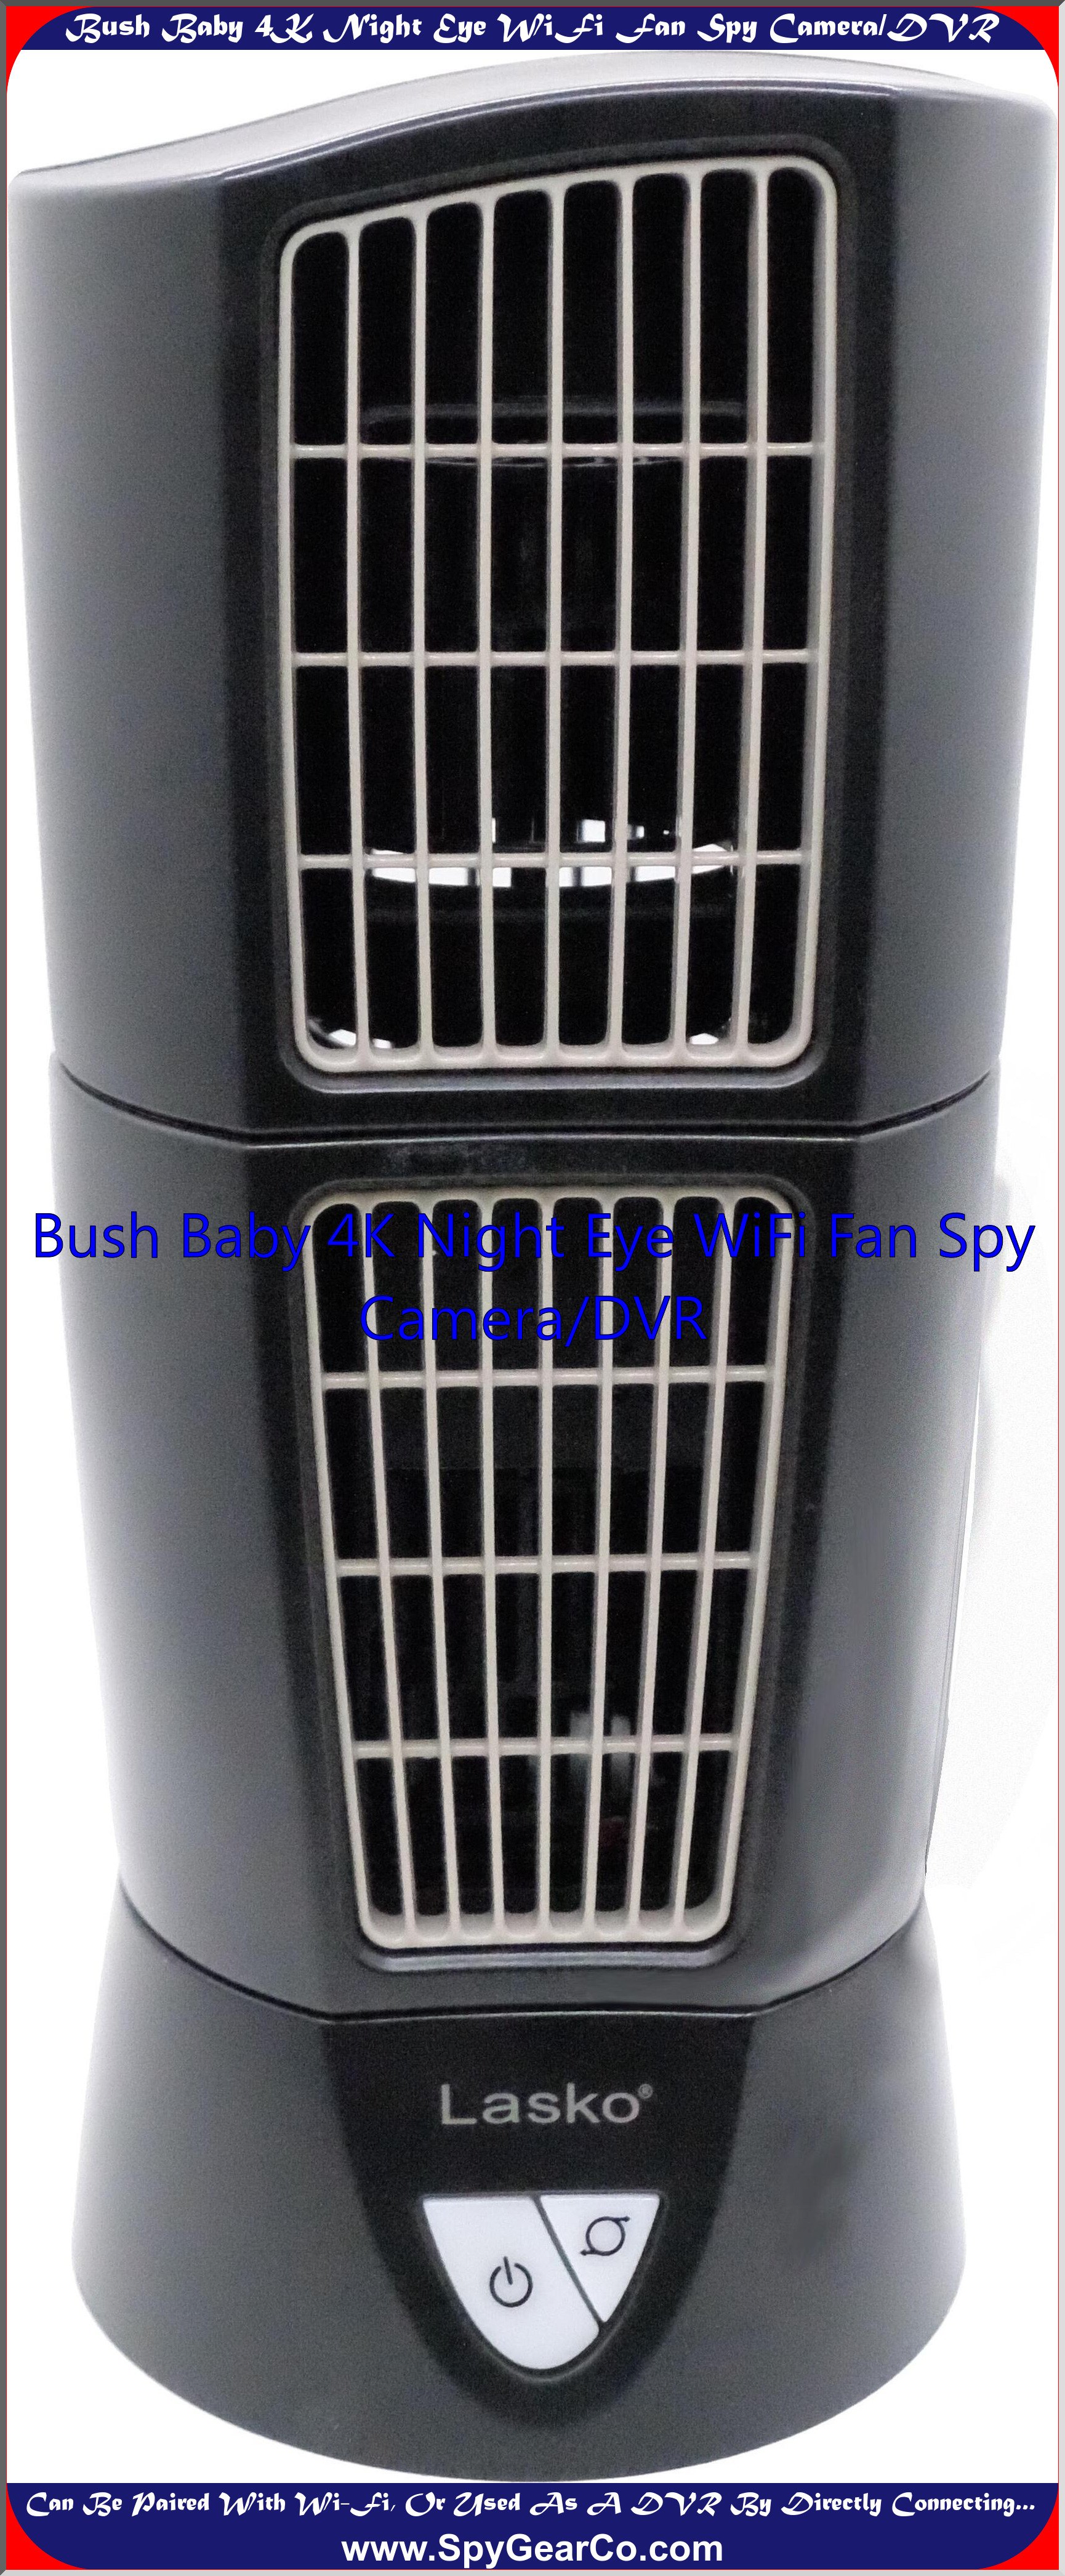 Bush Baby 4K Night Eye WiFi Fan Spy Camera/DVR